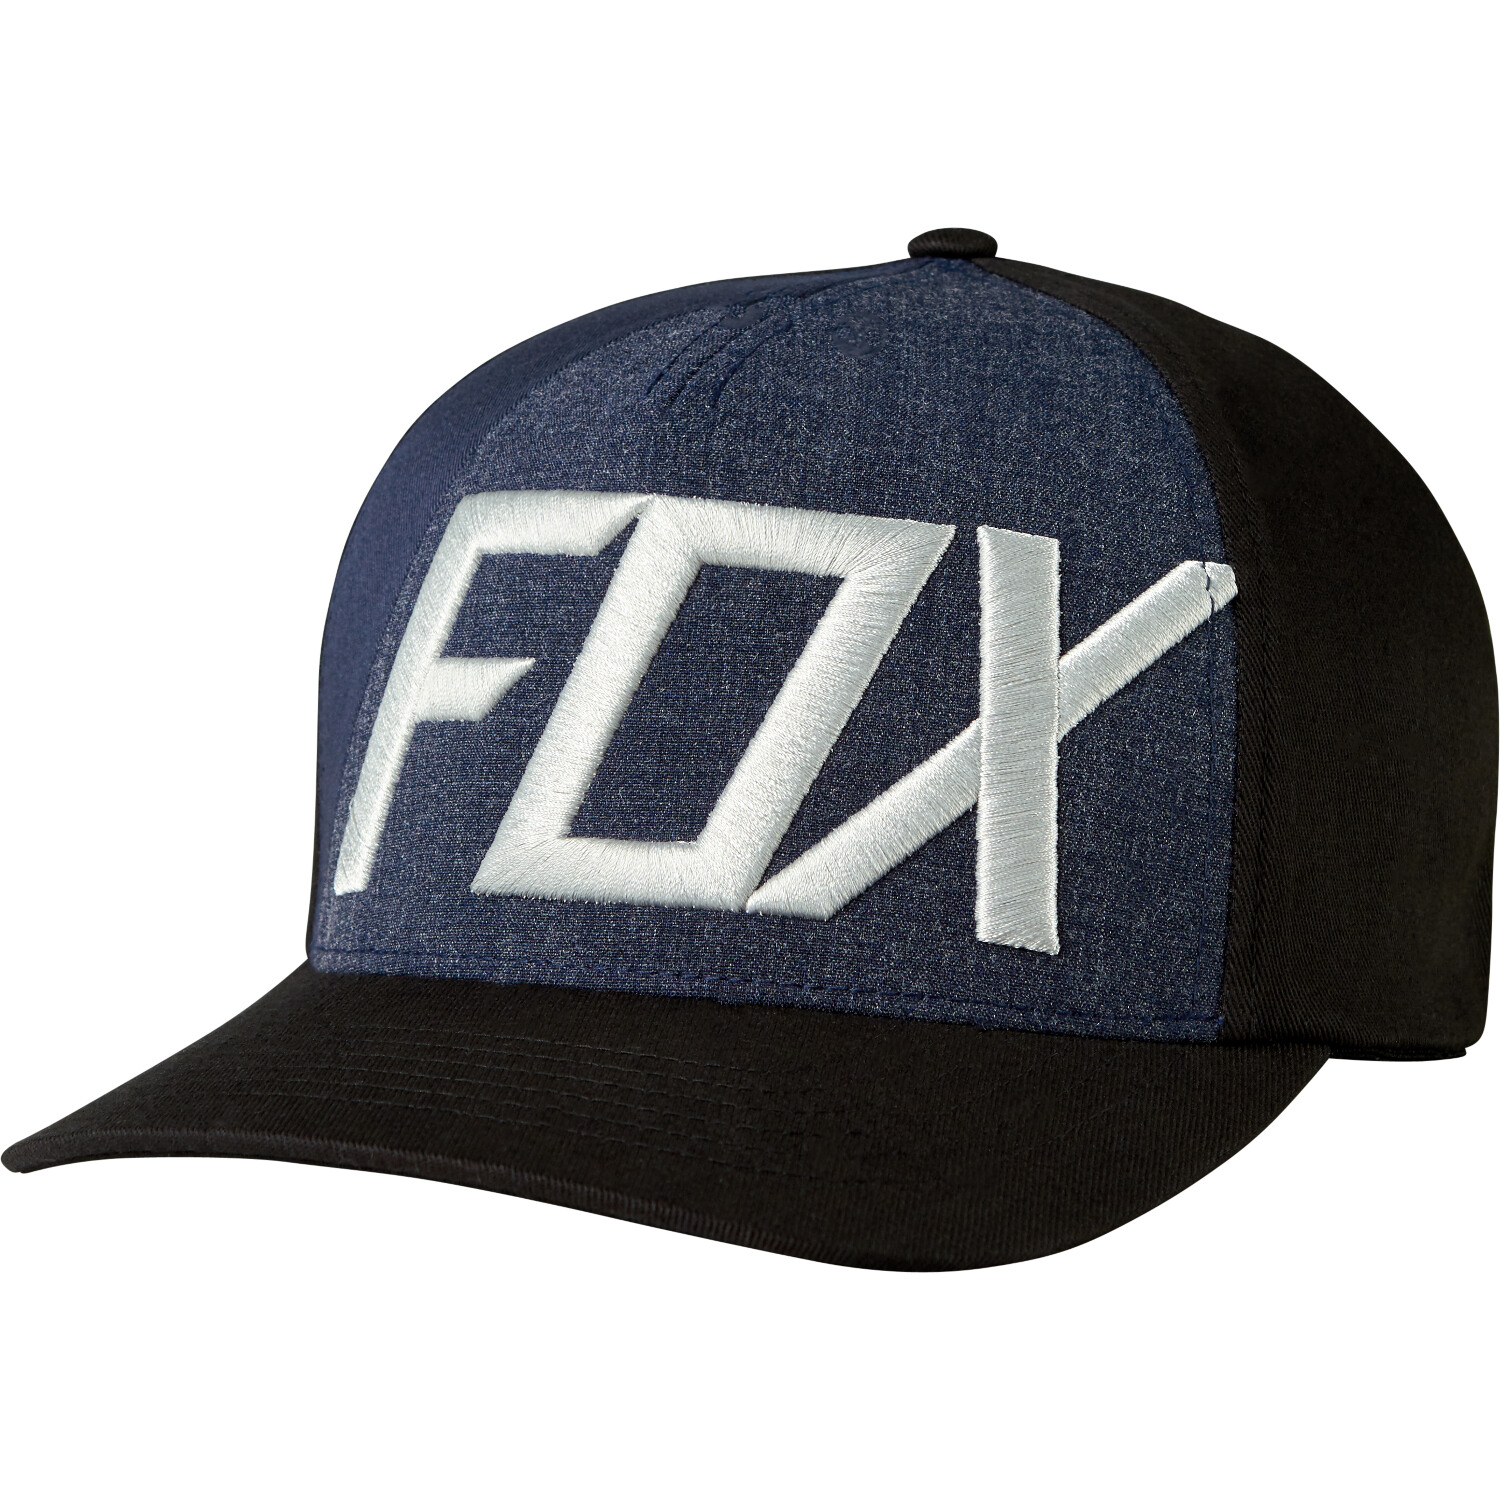 Fox Casquette Flexfit Blocked Out Black